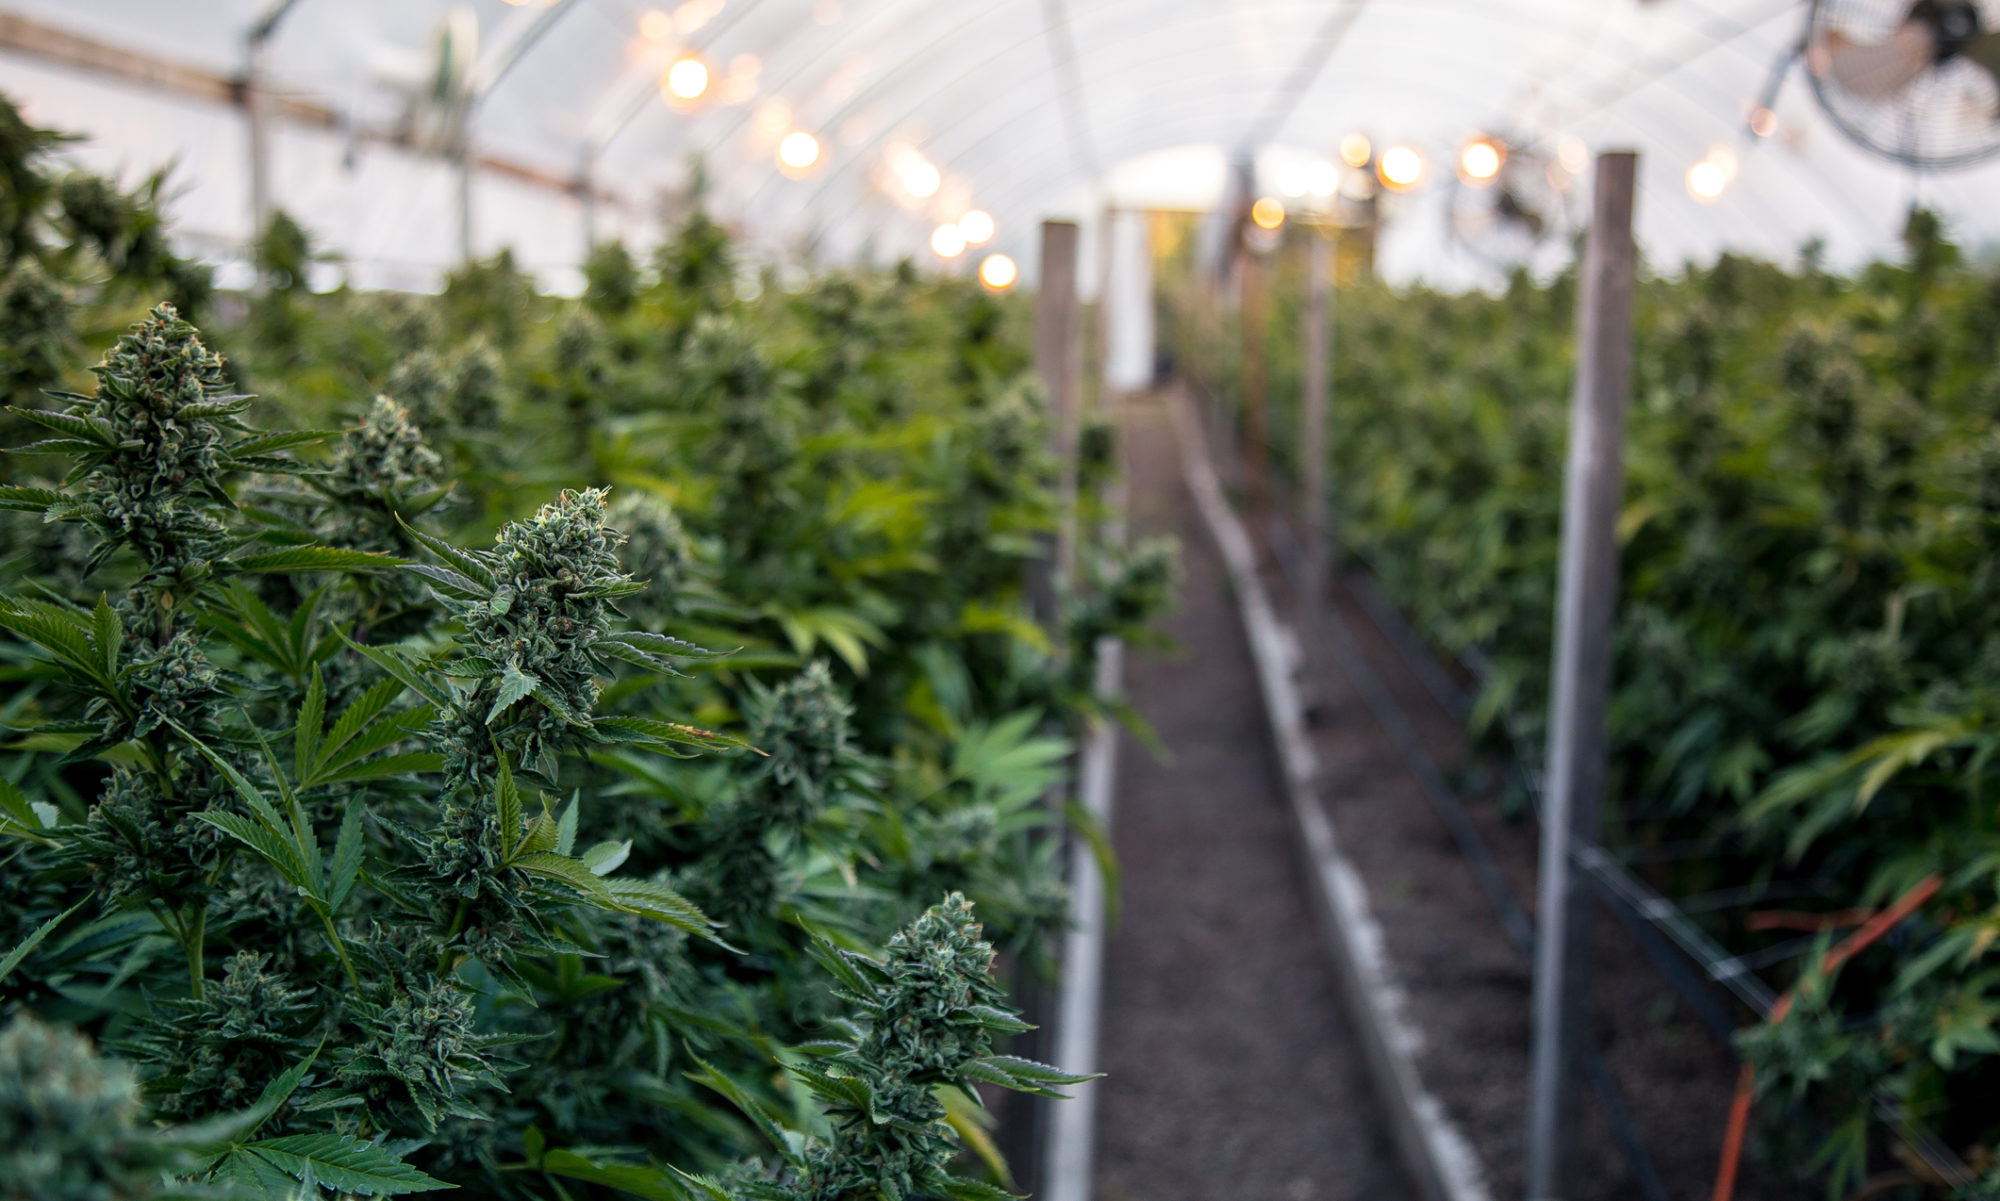 Marijuana grow farm